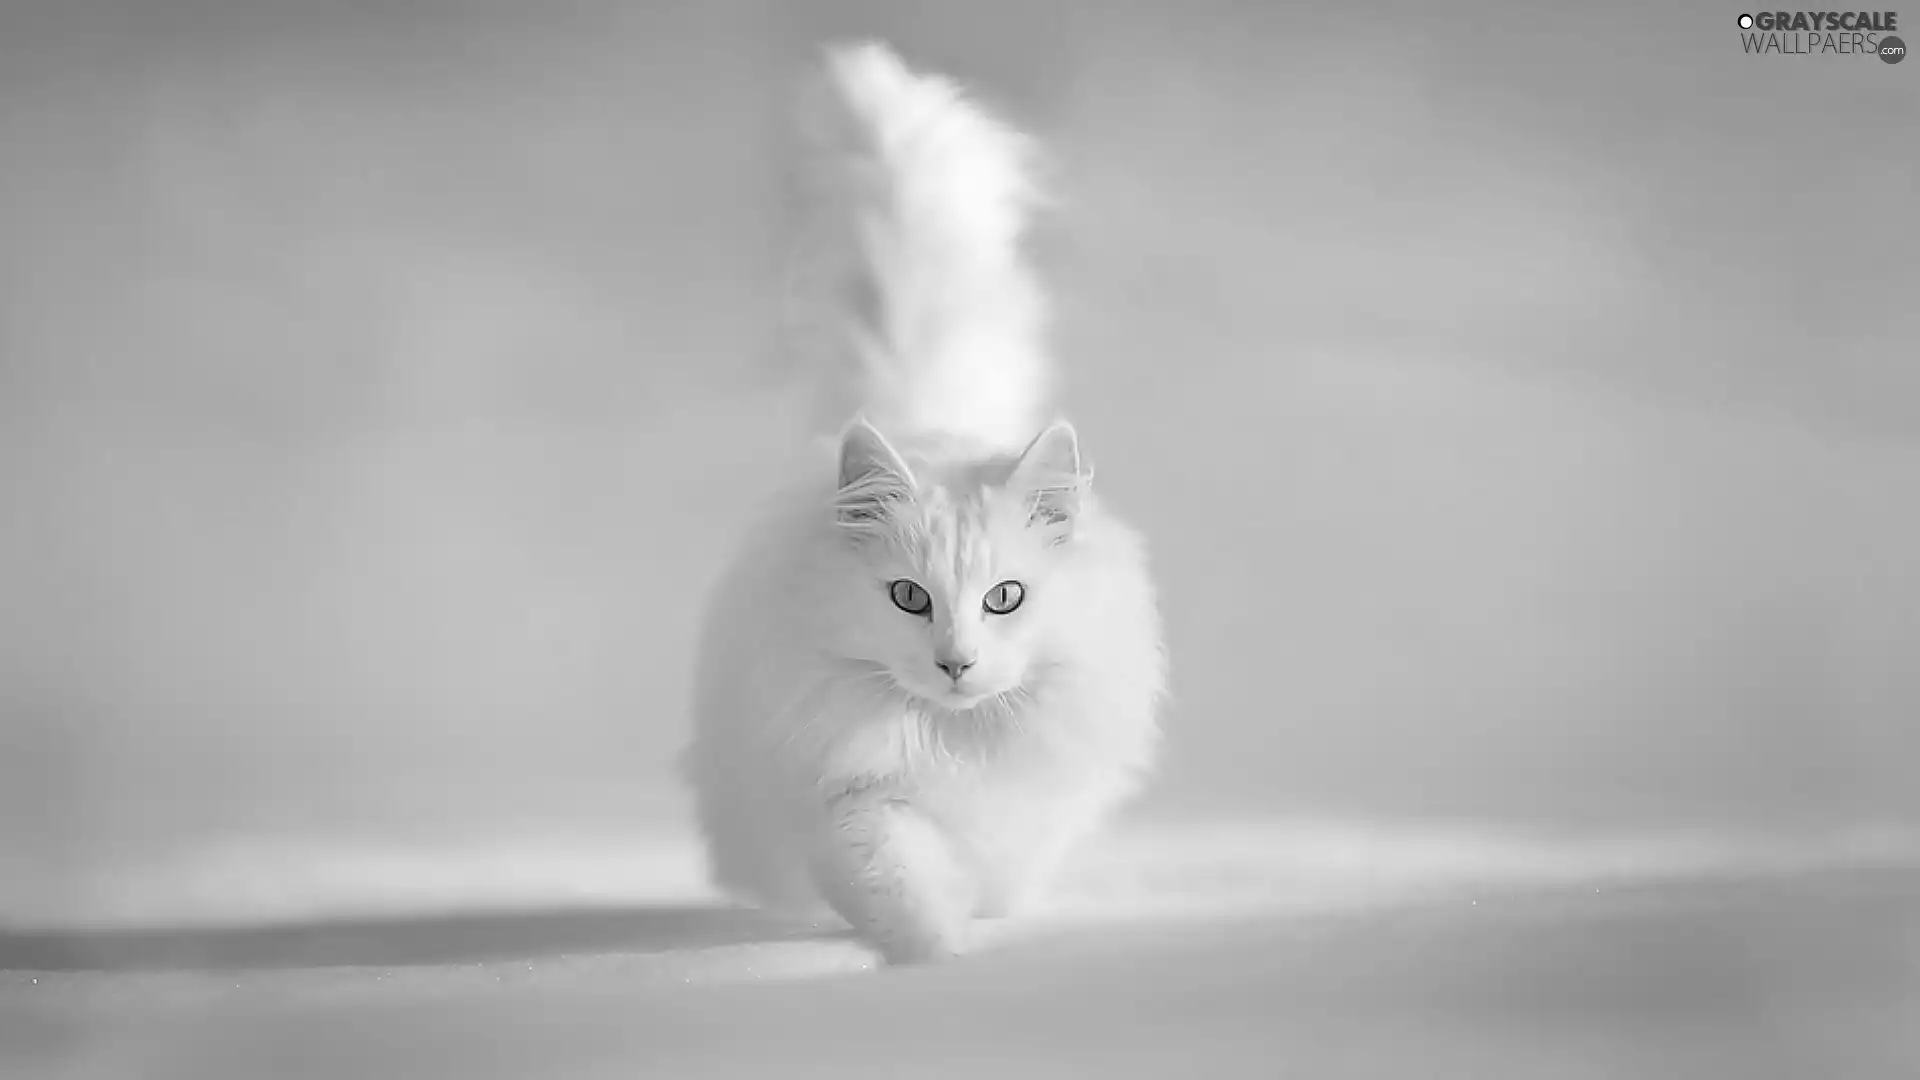 White, Turkish Angora Cat